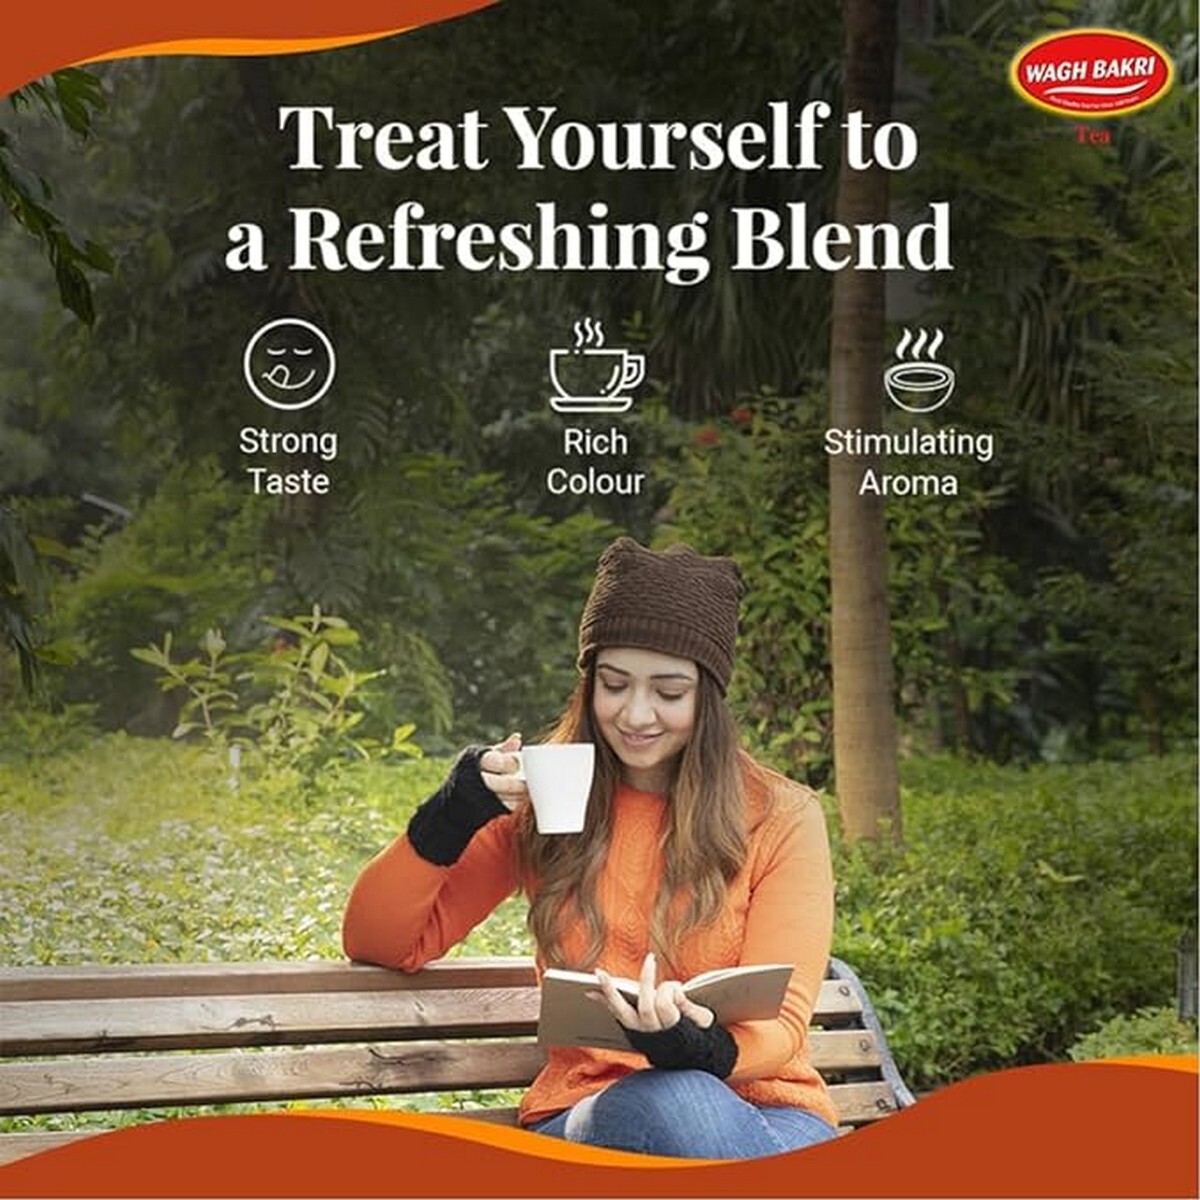 Wagh Bkri Strong & Refreshing Premium Leaf Tea250G